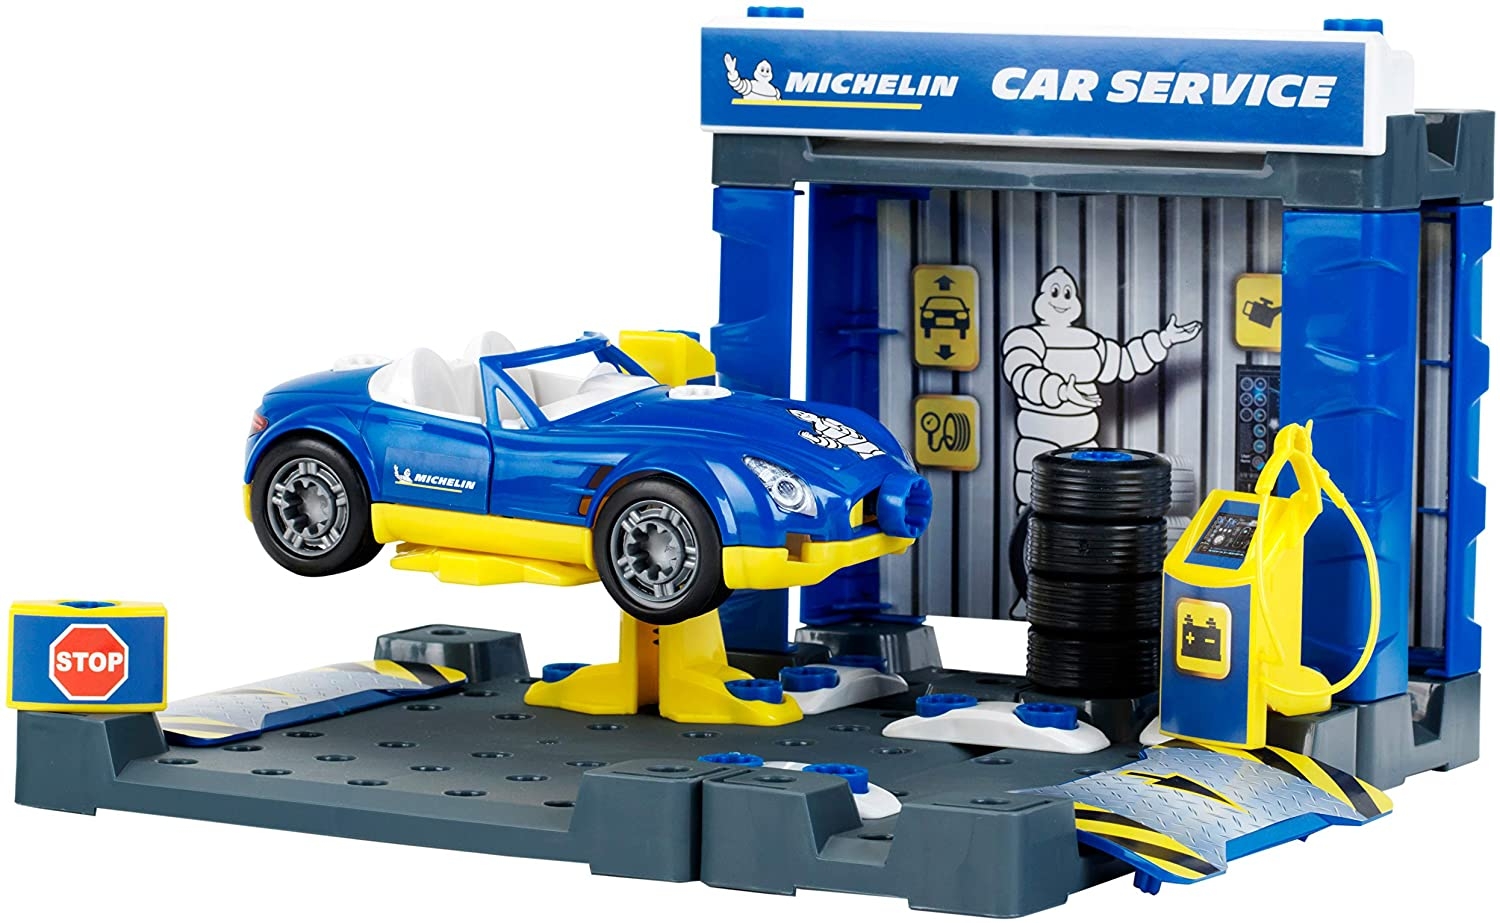 Συνεργείο Michelin με αυτοκίνητο